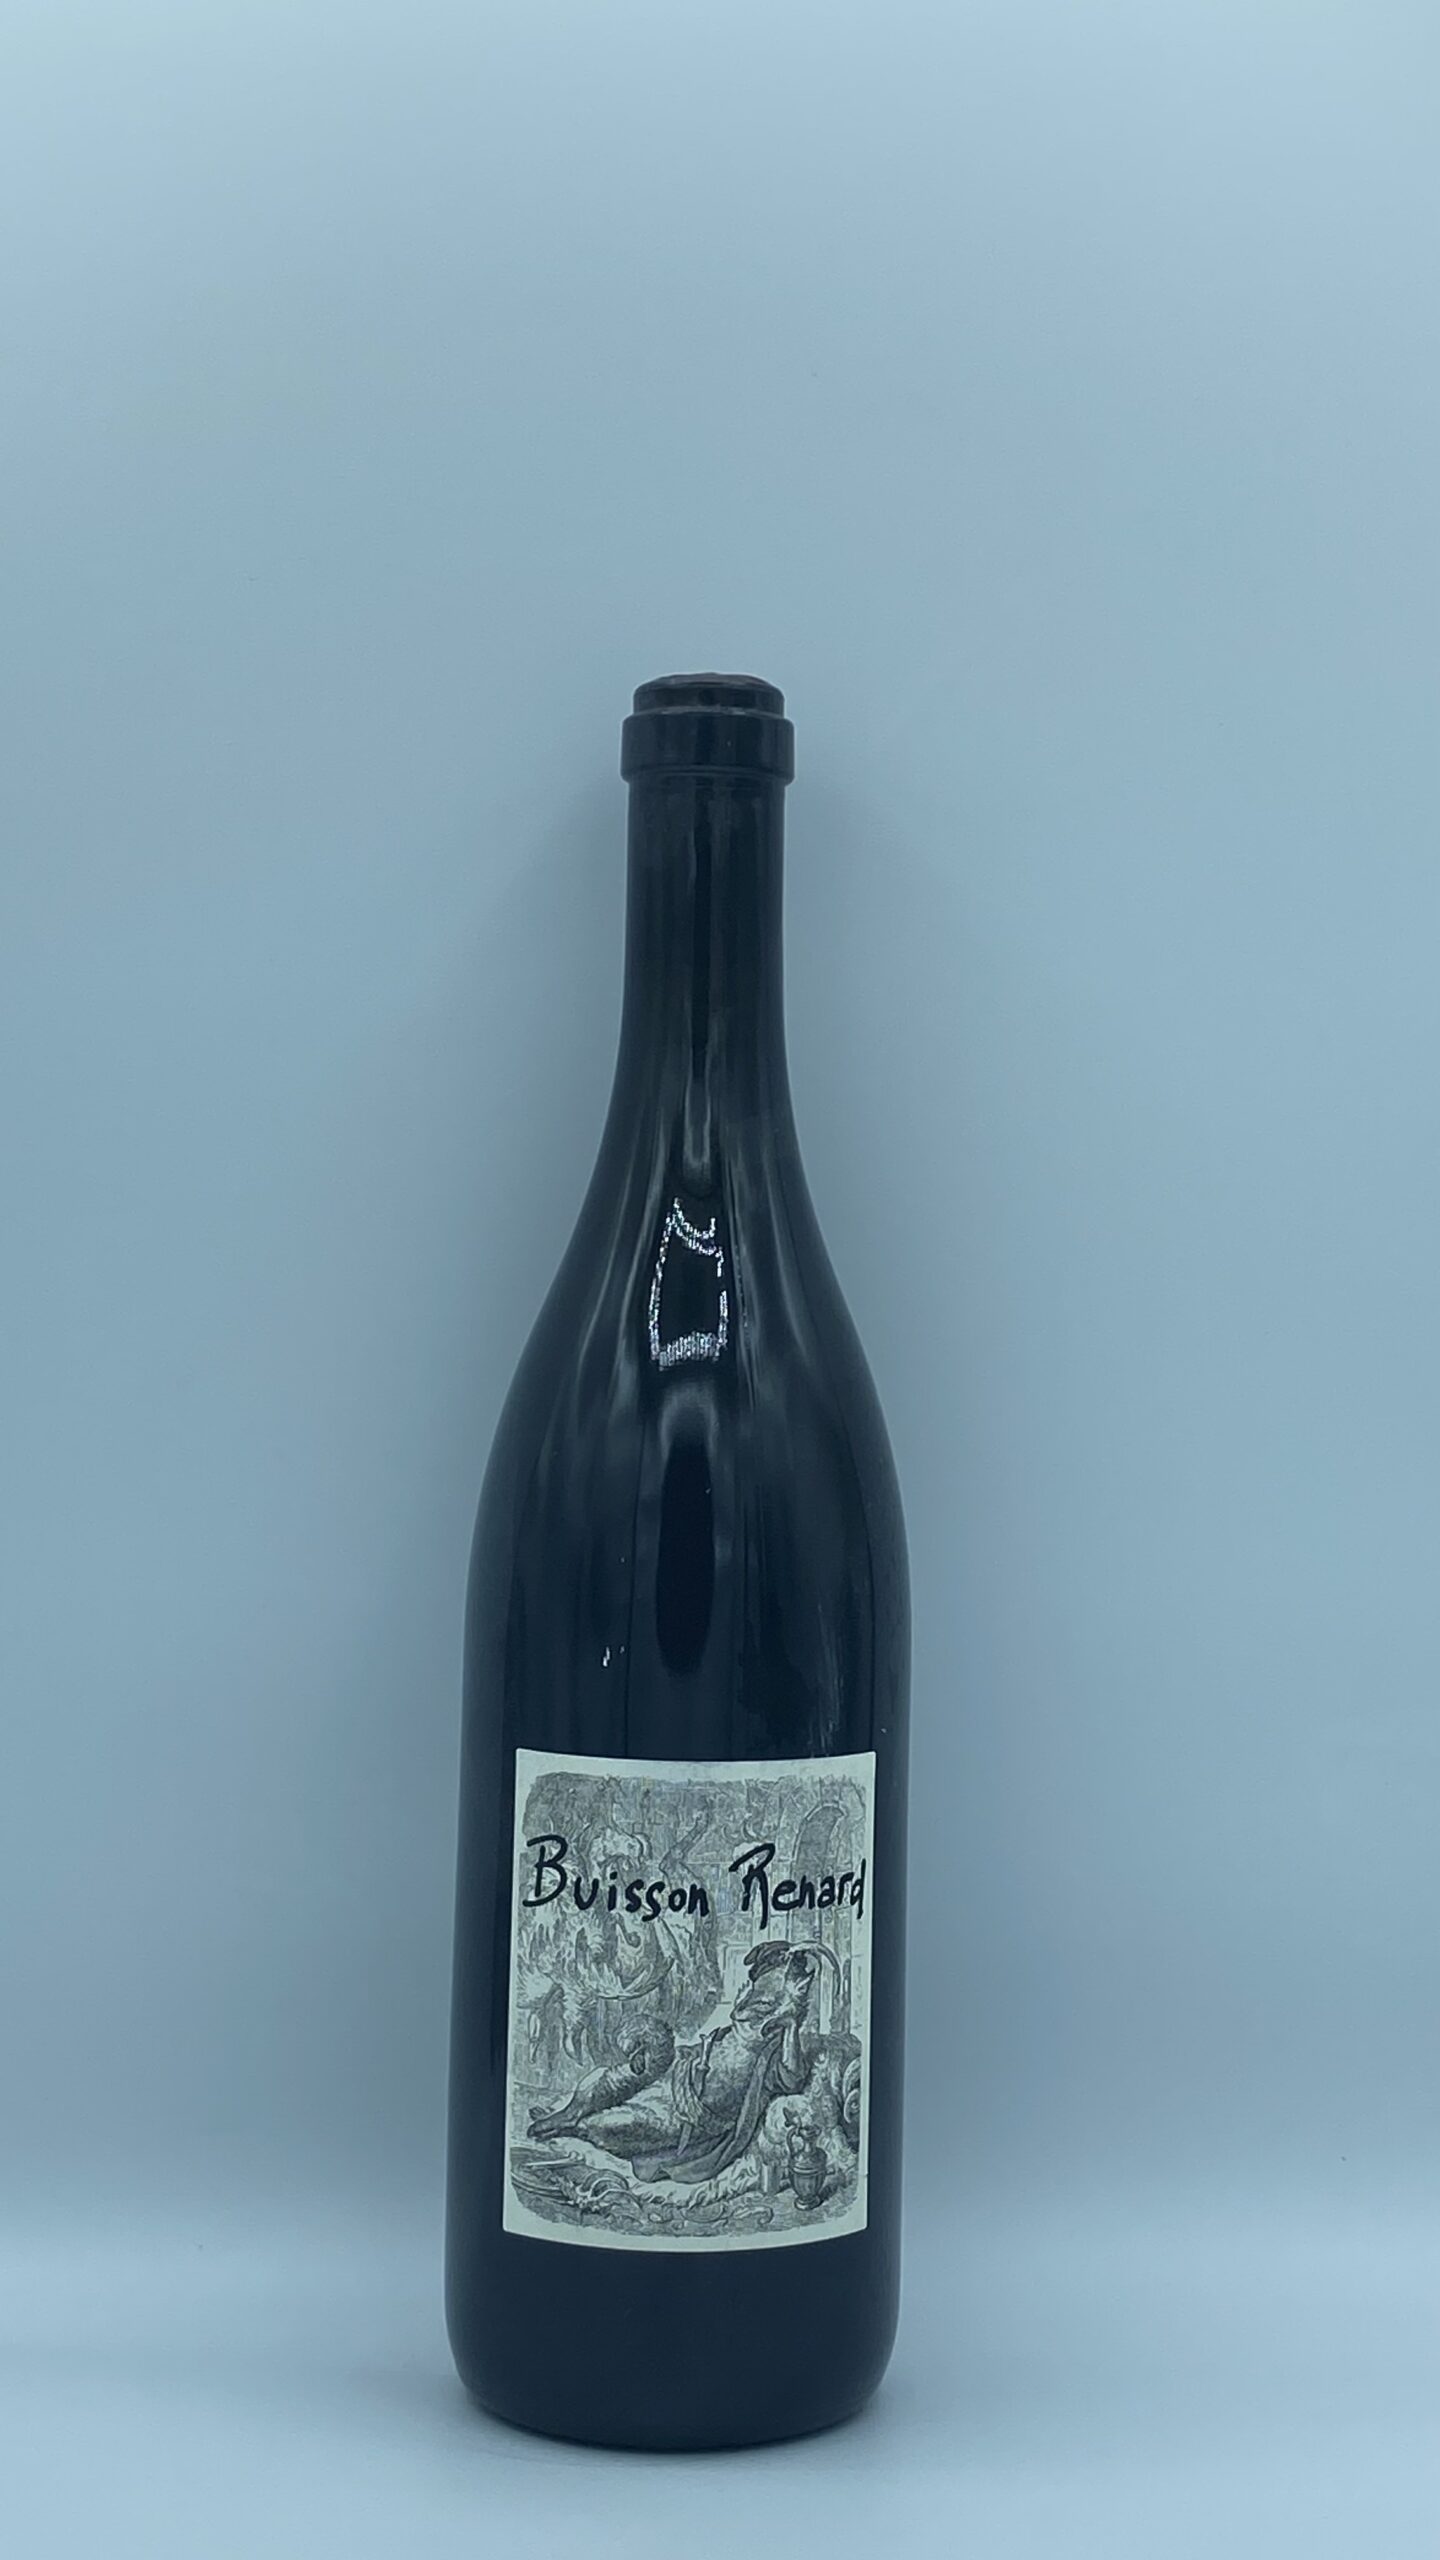 Loire Vin de France Pouilly-Fumé “Buisson Renard” 2018 Domaine Dagueneau